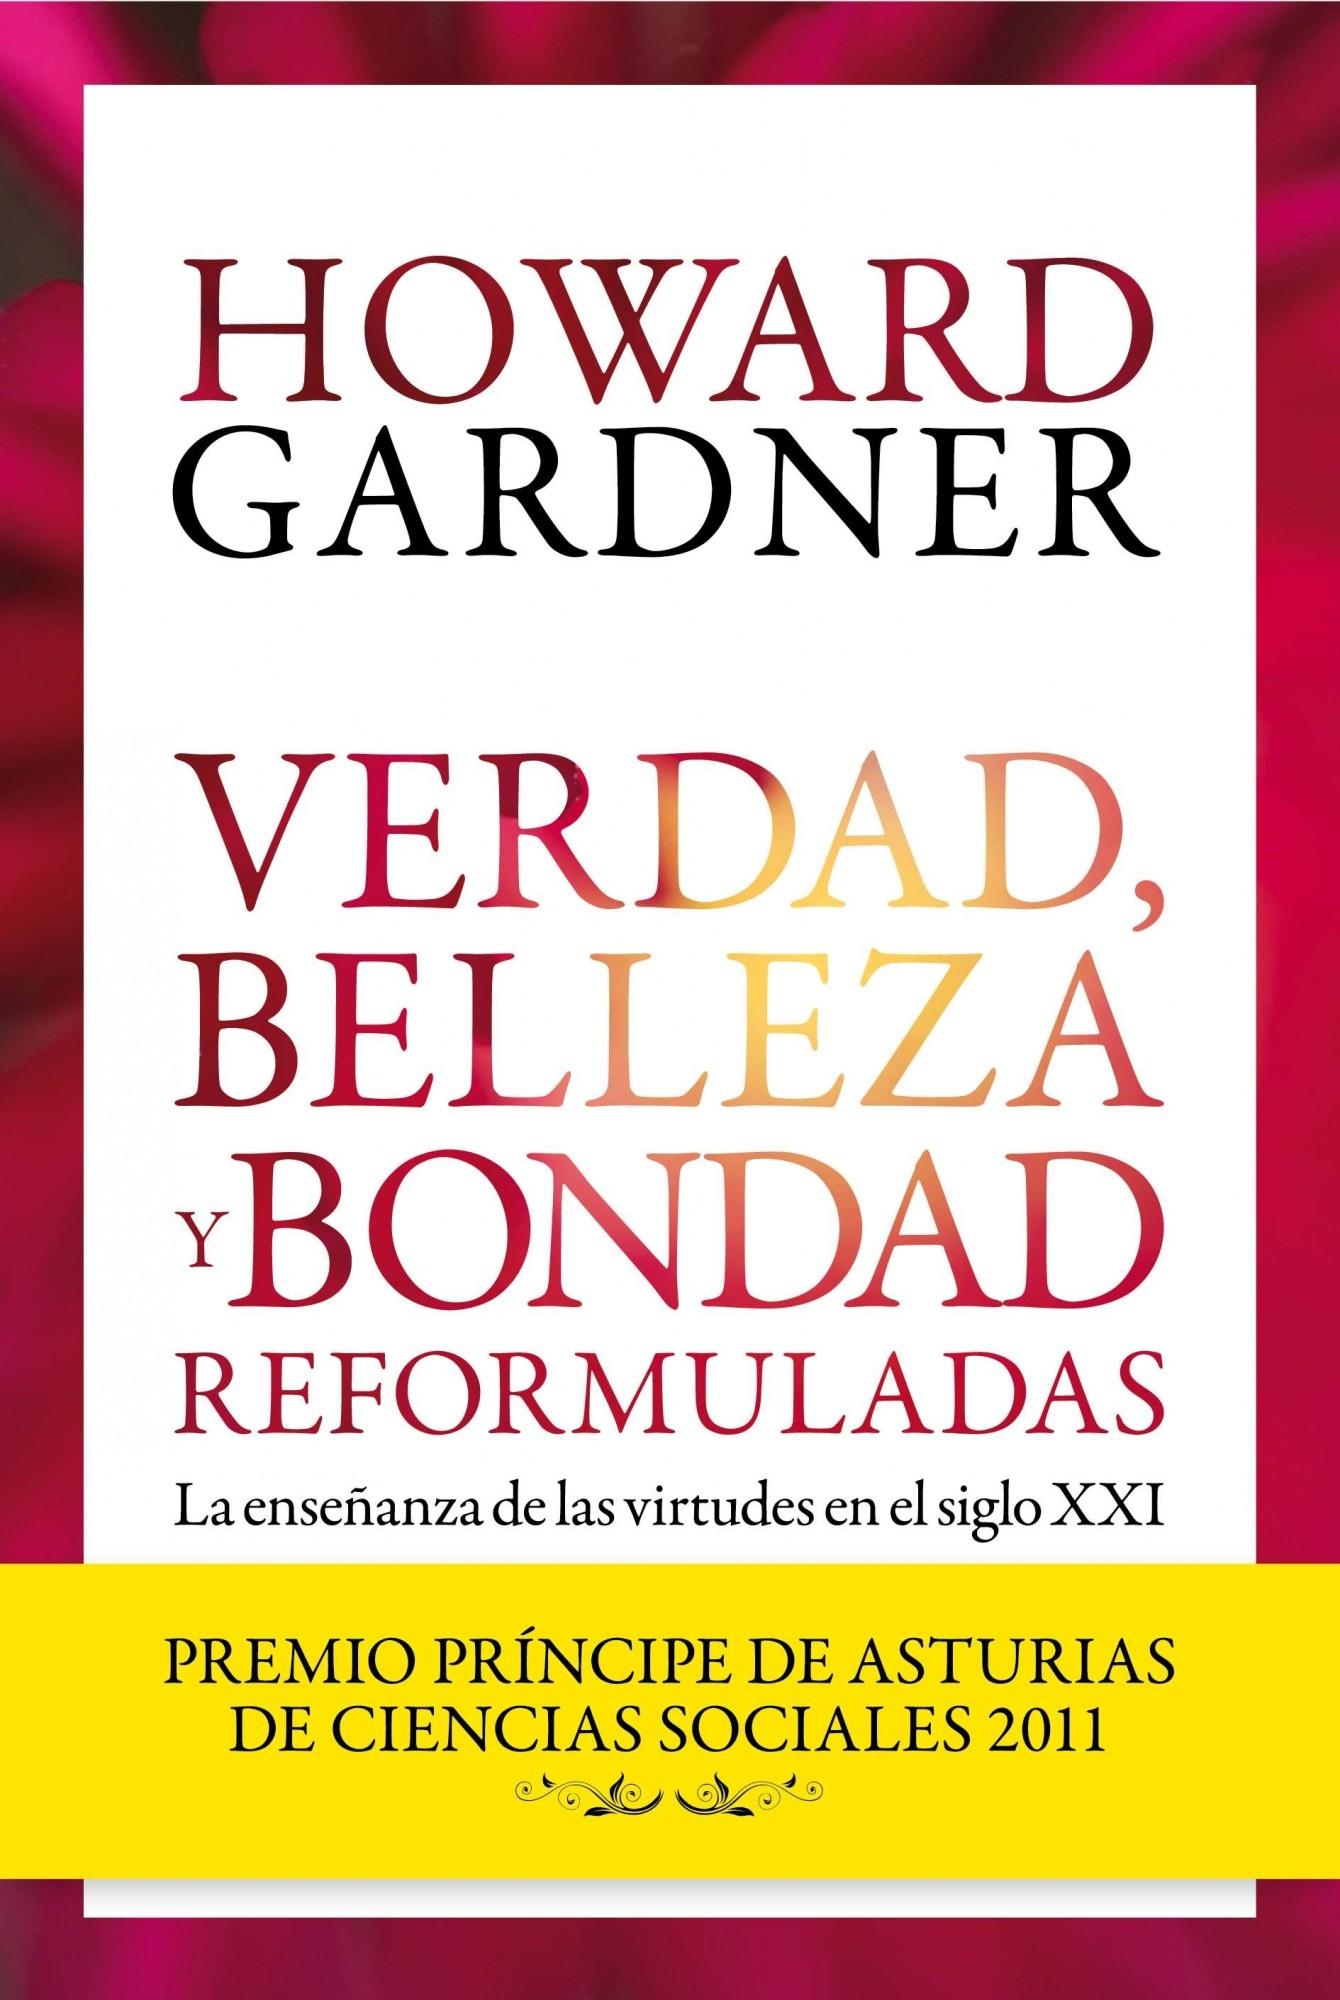 VERDAD, BELLEZA Y BONDAD REFORMULADAS "La enseñanza de las virtudes en el siglo XXI"